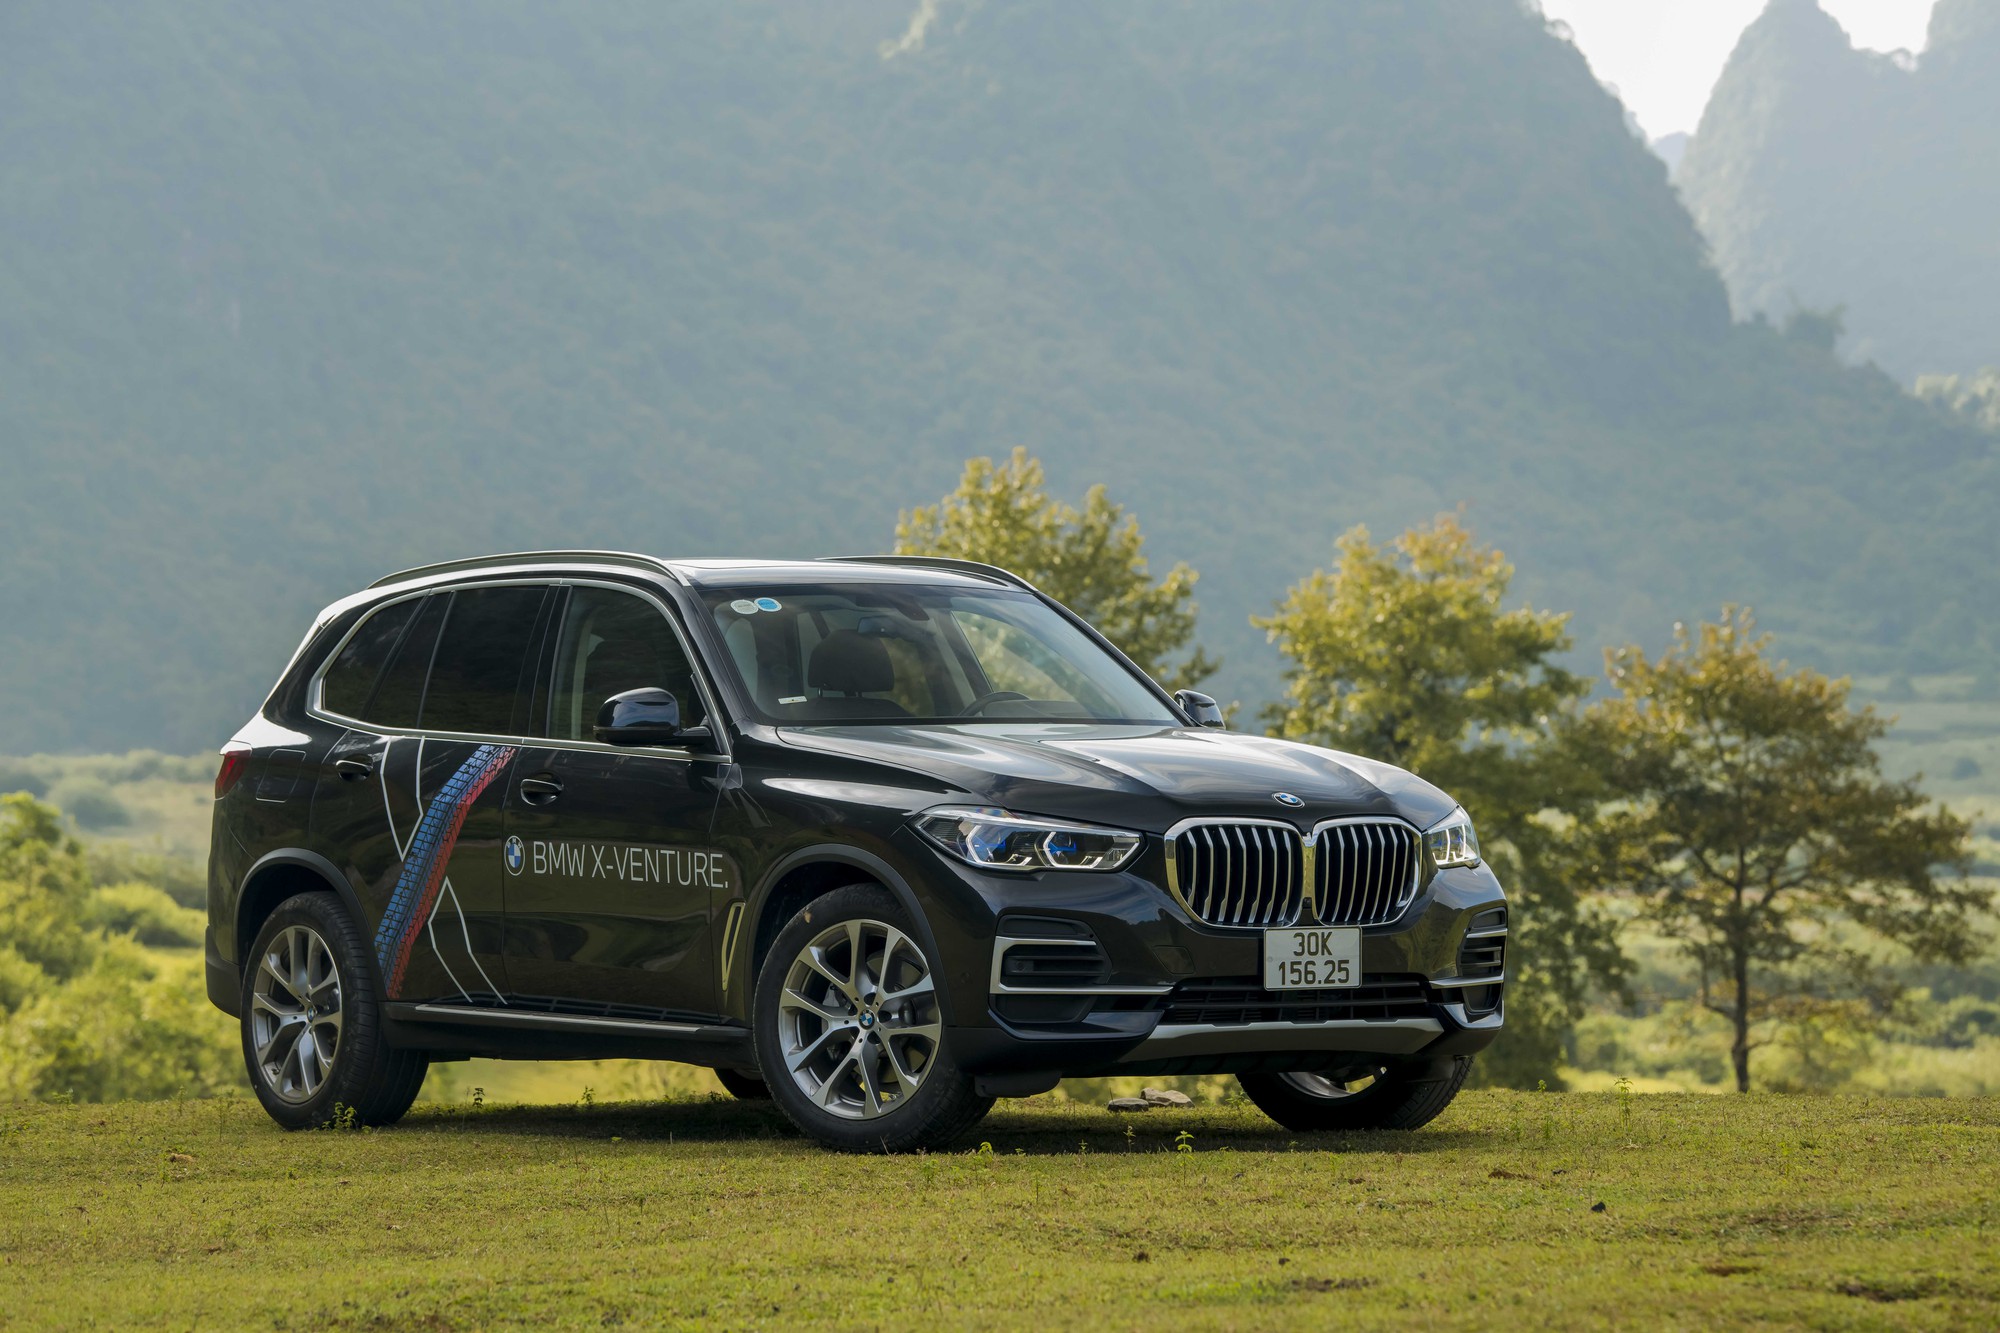 Hành trình BMW X-Venture qua cảm nhận của người cầm lái: &quot;Lái mượt, đầm và an toàn&quot; - Ảnh 3.